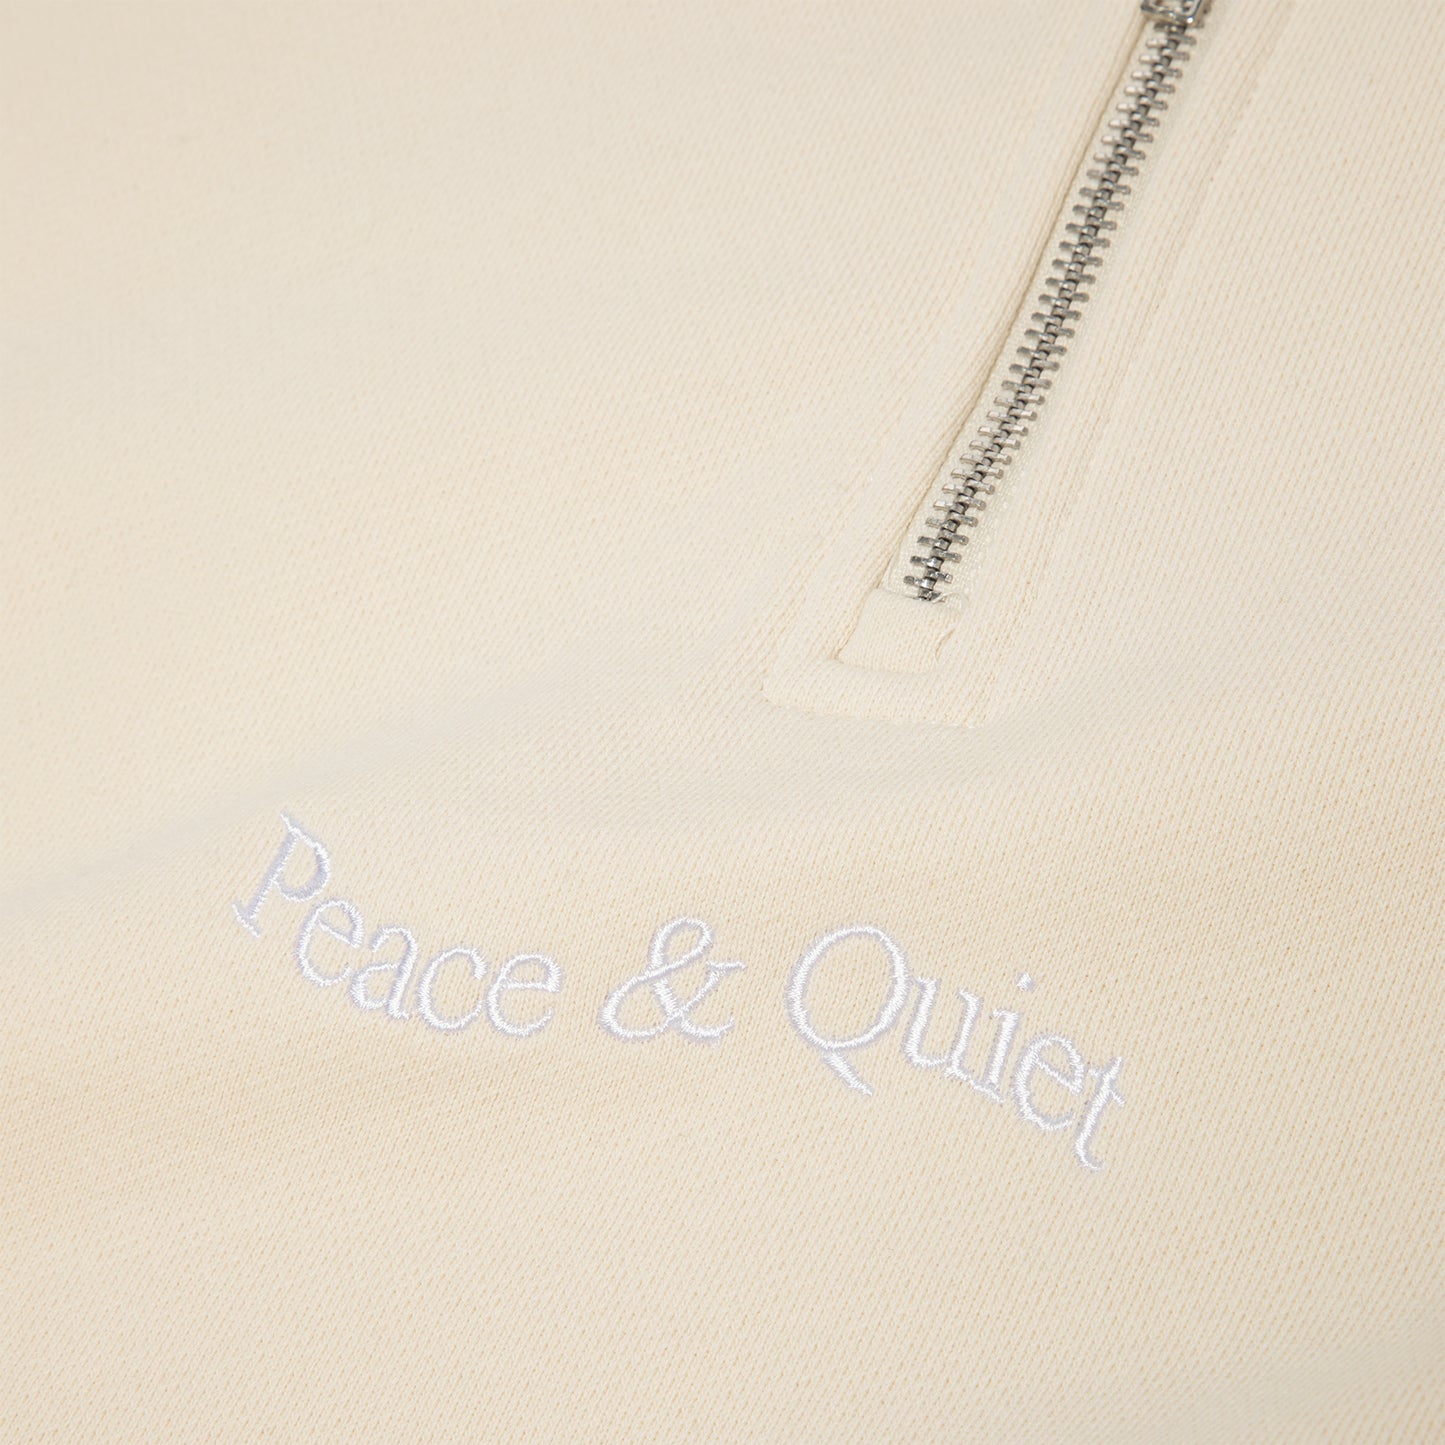 Museum of Peace and Quiet Wordmark Quarter Zip (Sand)